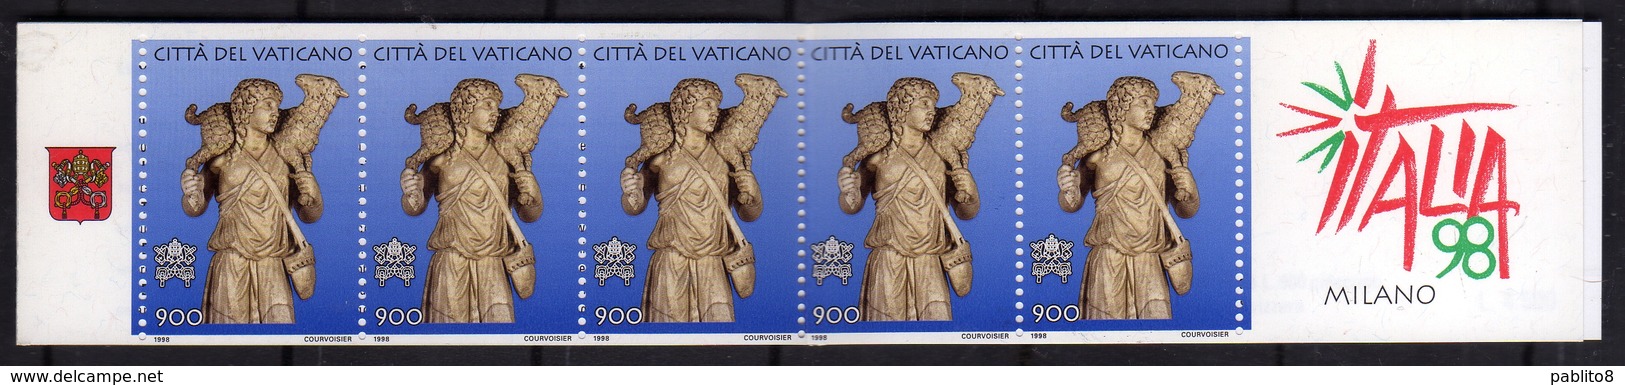 CITTÀ DEL VATICANO VATICAN VATIKAN 1998 ESPOSIZIONE MONDIALE DI FILATELIA ARTE ITALIA 98 LIBRETTO BOOKLET NUOVO MNH - Booklets